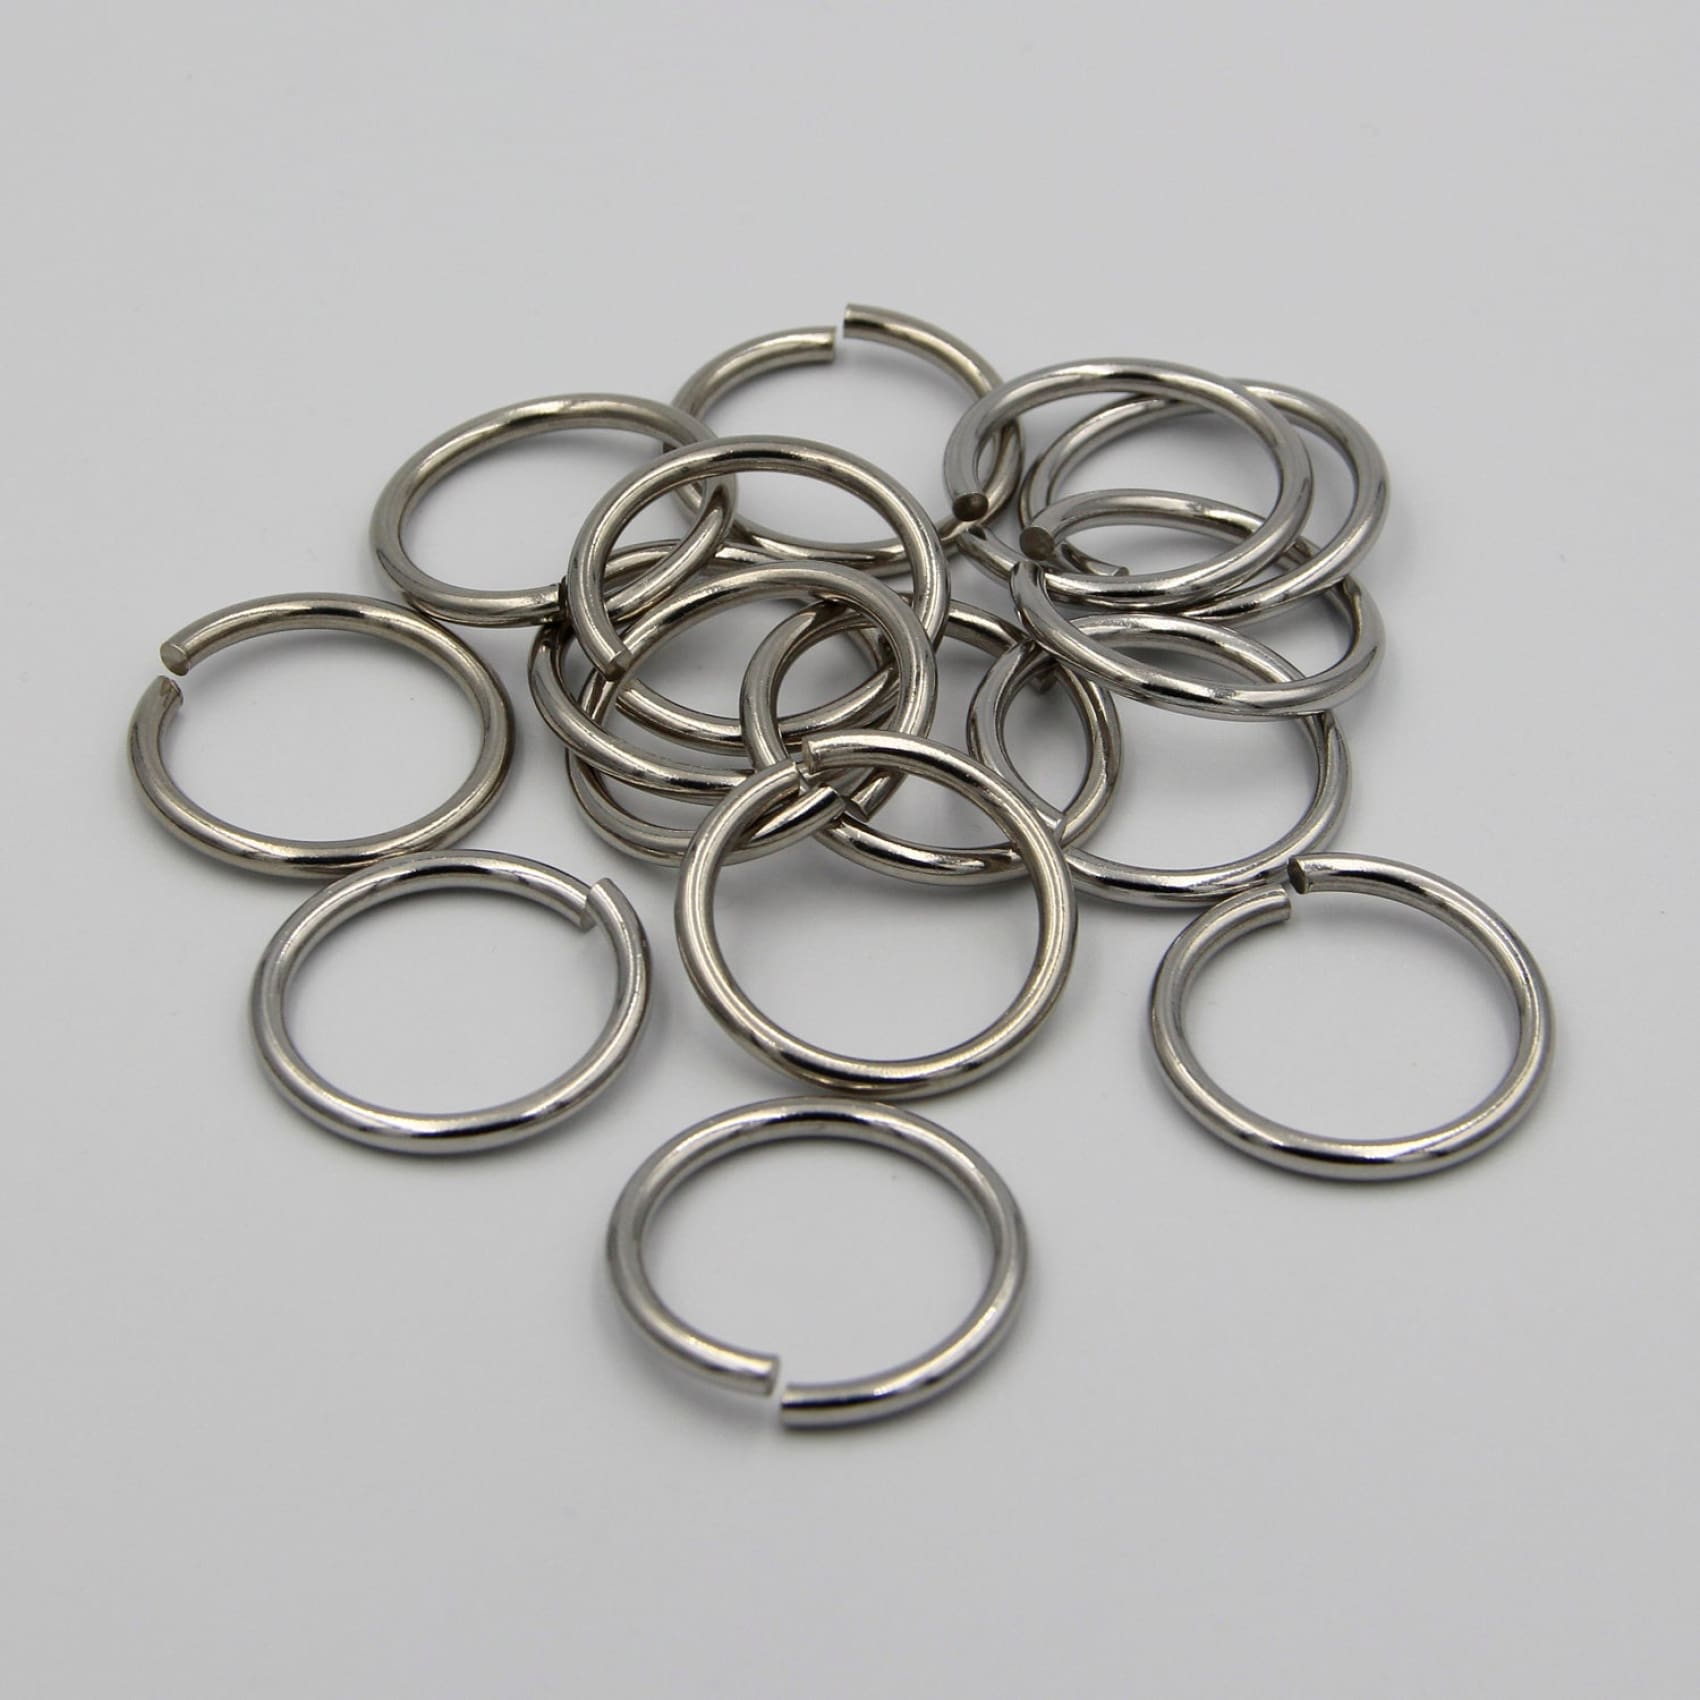 Split Ring Stainless Steel Key Jump Ring 20mm - 5pcs - Rings / Split Key Rings